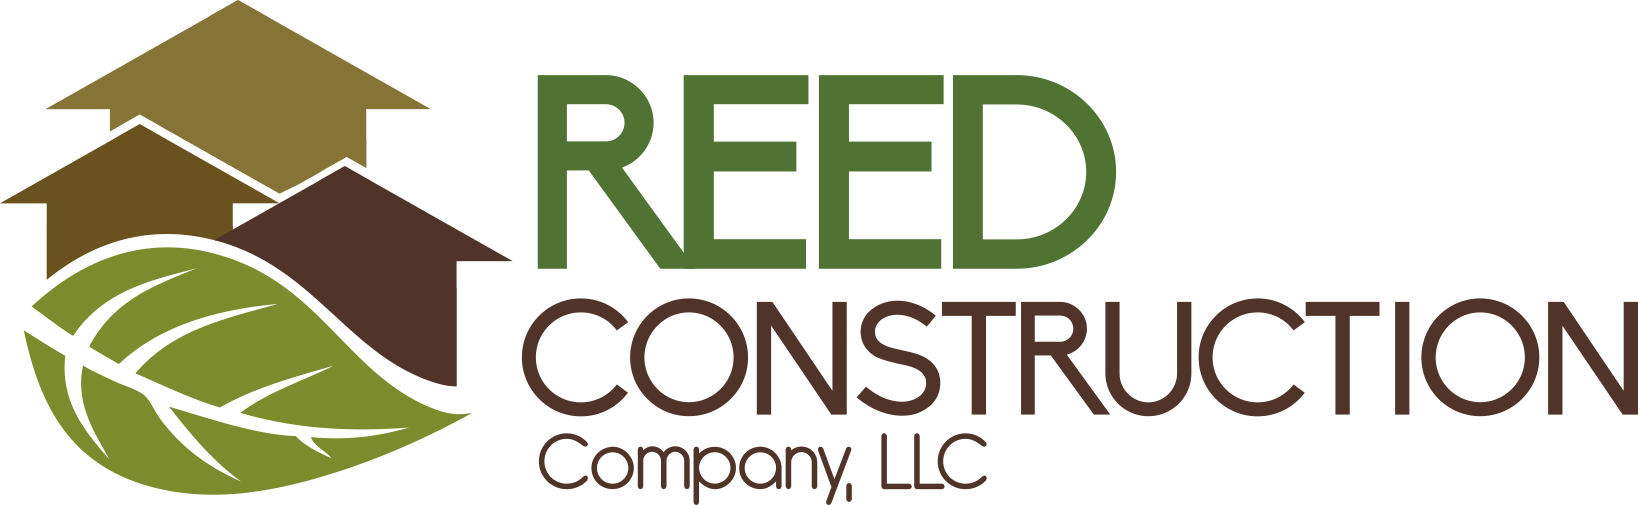 ReedConstructionCompany